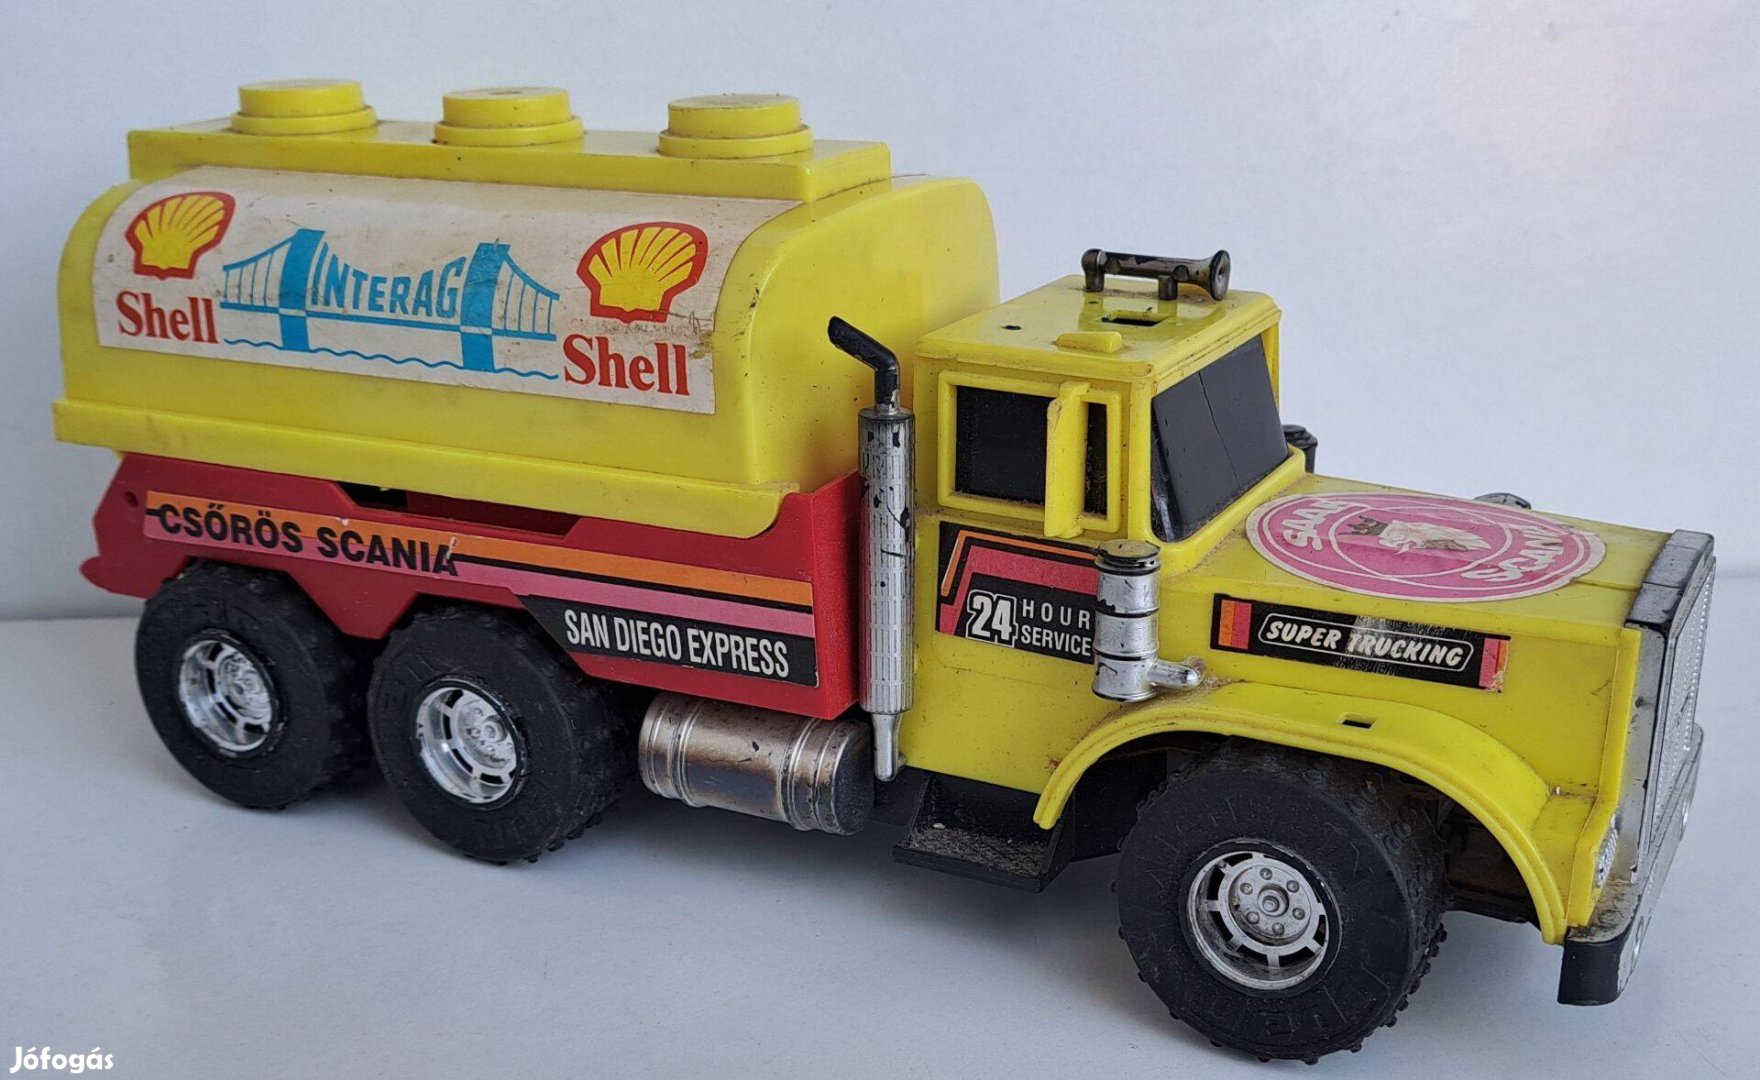 "Csőrös Scania" Shell teherautó